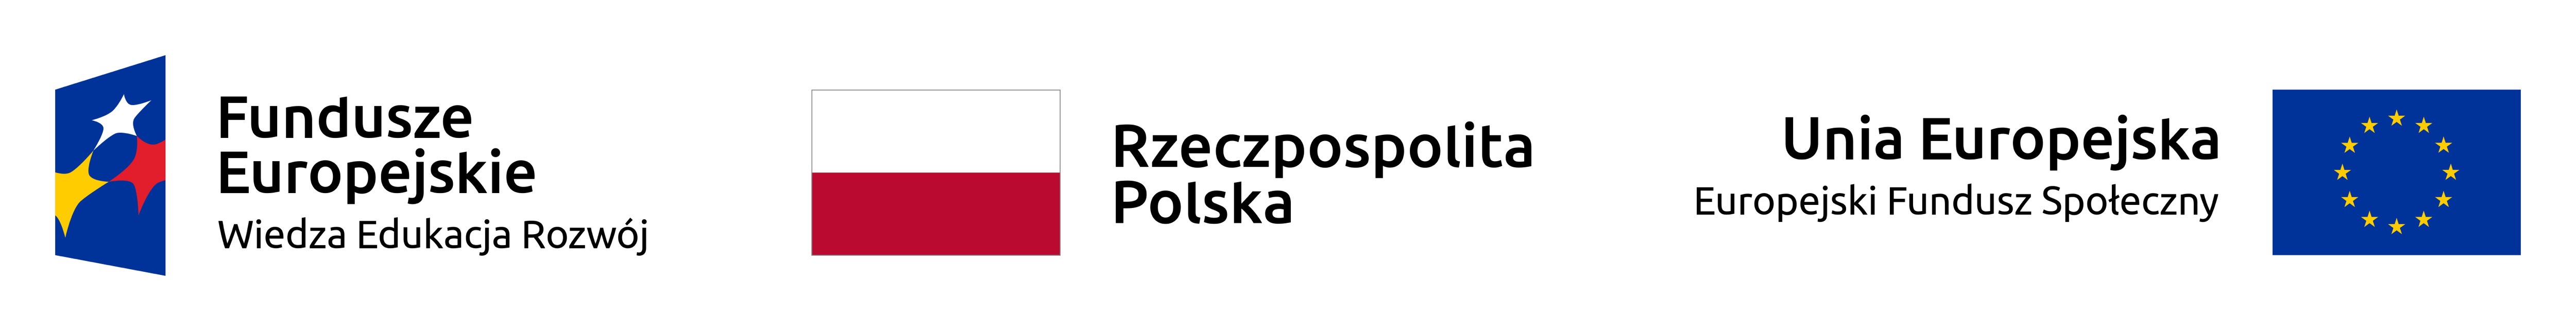 3 Logotypy. Fundusze europejskie. Wiedza, edukacja rozwój. Rzeczypospolita Polska. Europejski Fundusz Społeczny.